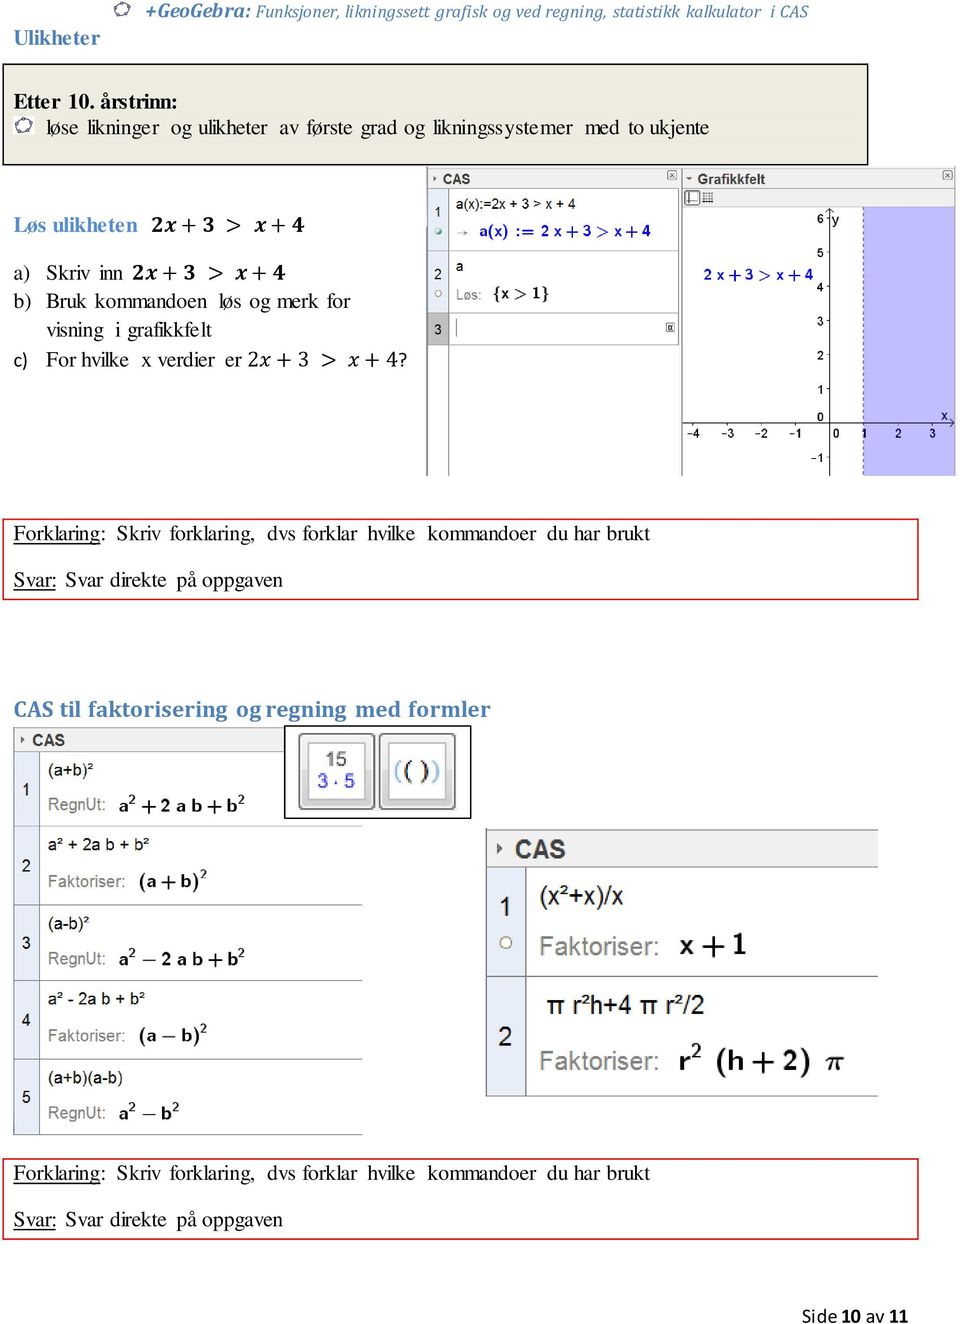 Funksjoner, likningssett og regning i CAS - PDF Gratis nedlasting